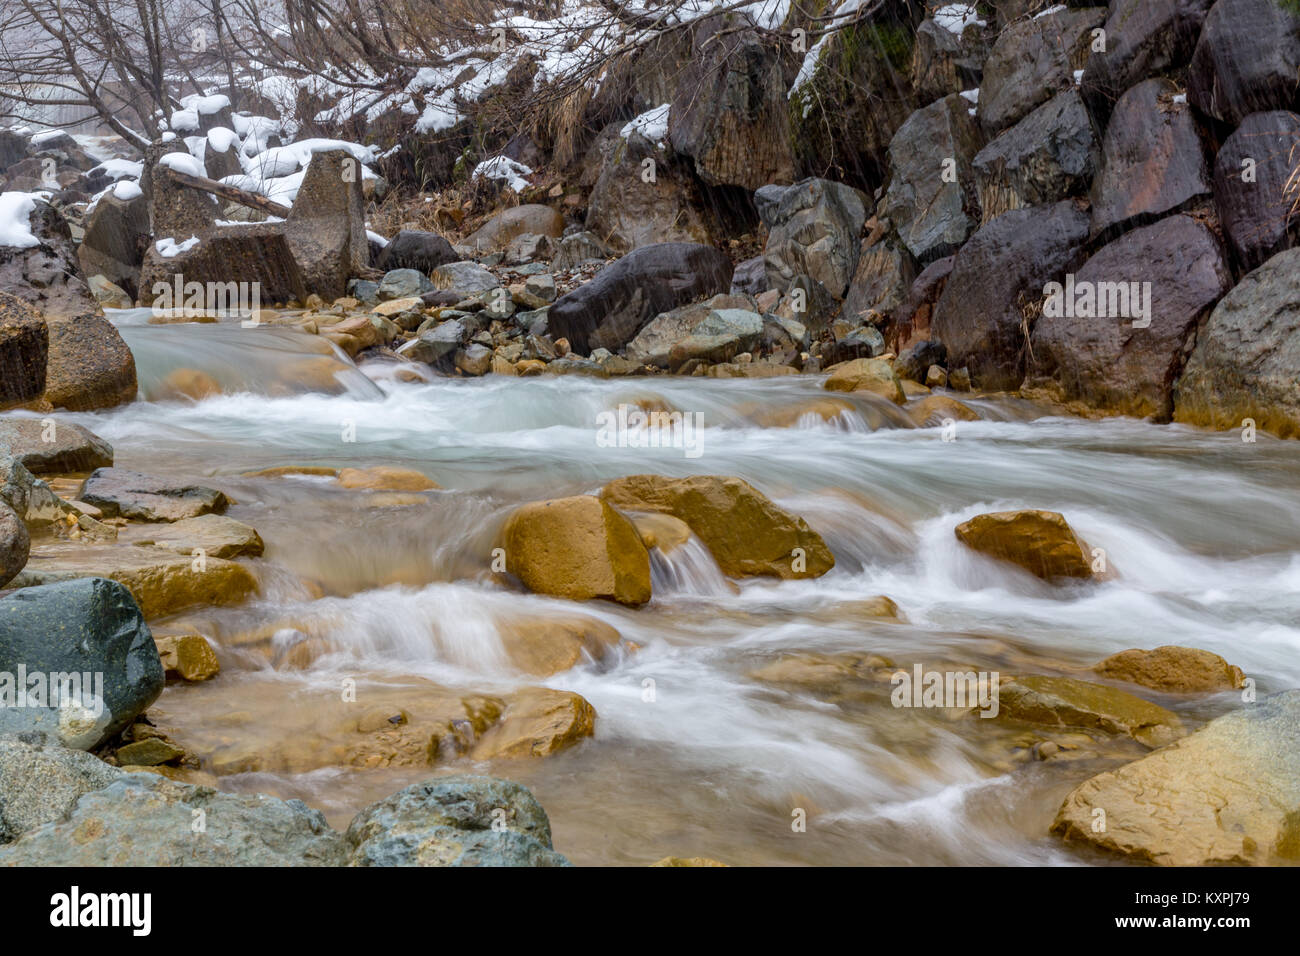 La Yokoku río fluye a través de la montaña de rocas. El río es alimentado por aguas termales en las montañas, por lo que permanece caliente incluso en el frío del invierno Foto de stock